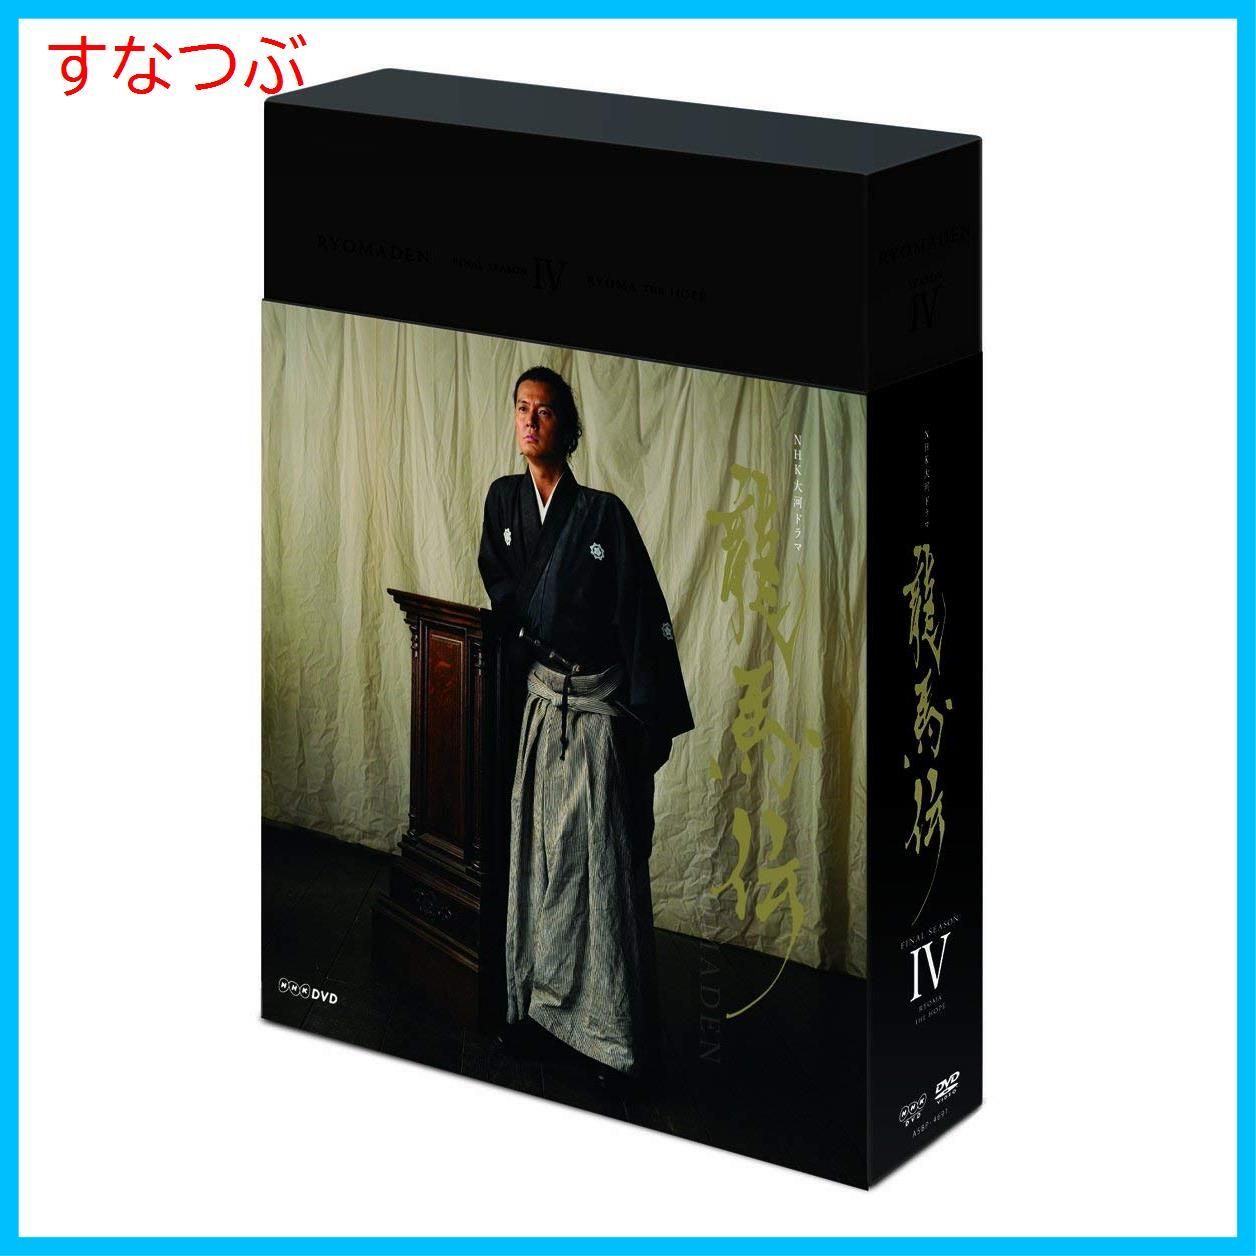 【新品未開封】NHK大河ドラマ 龍馬伝 完全版 DVD BOX-4 (FINAL SEASON) 福山雅治 (出演) 香川照之 (出演) 形式: DVD